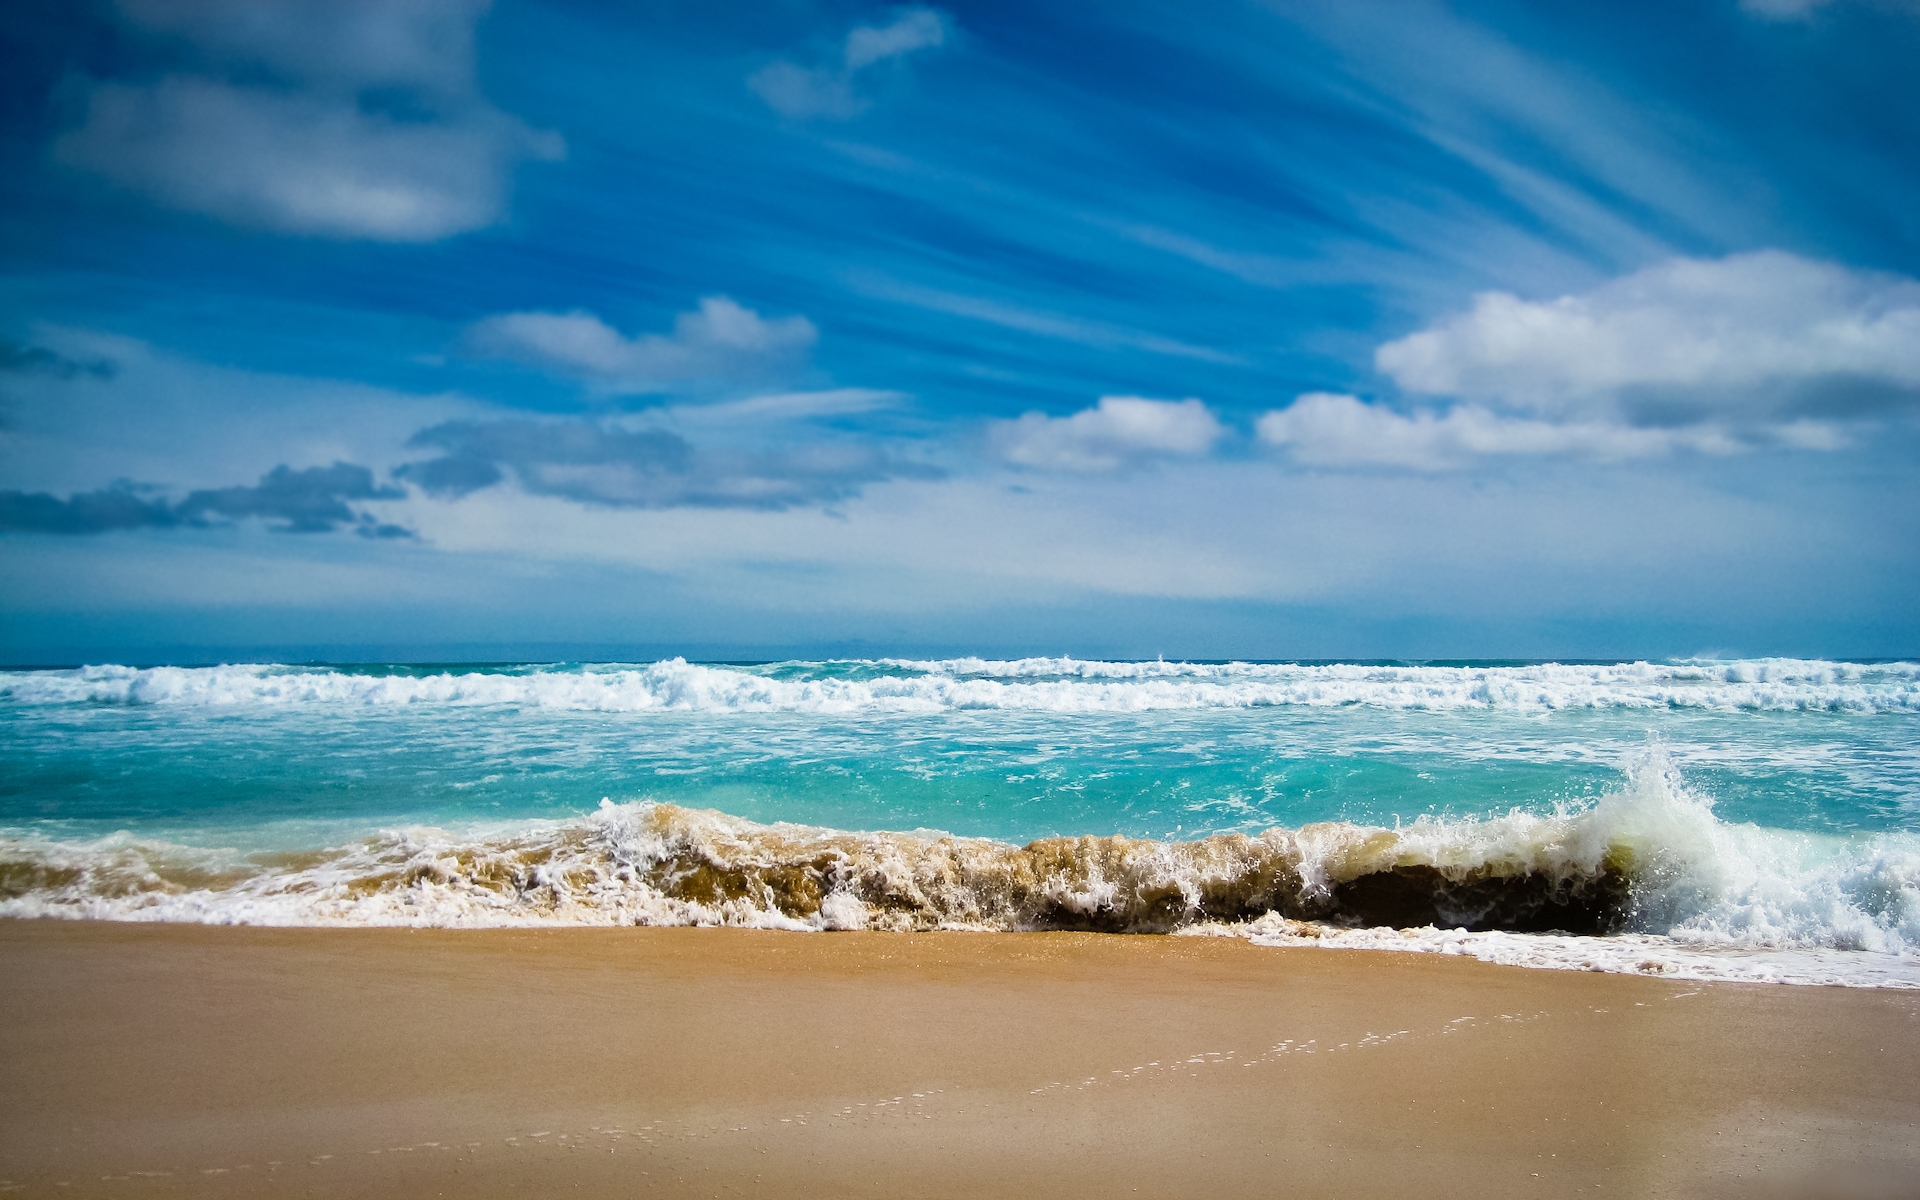 Картинки Океан, море, залив, волны, голубая вода, побережье, пляж фото и обои на рабочий стол